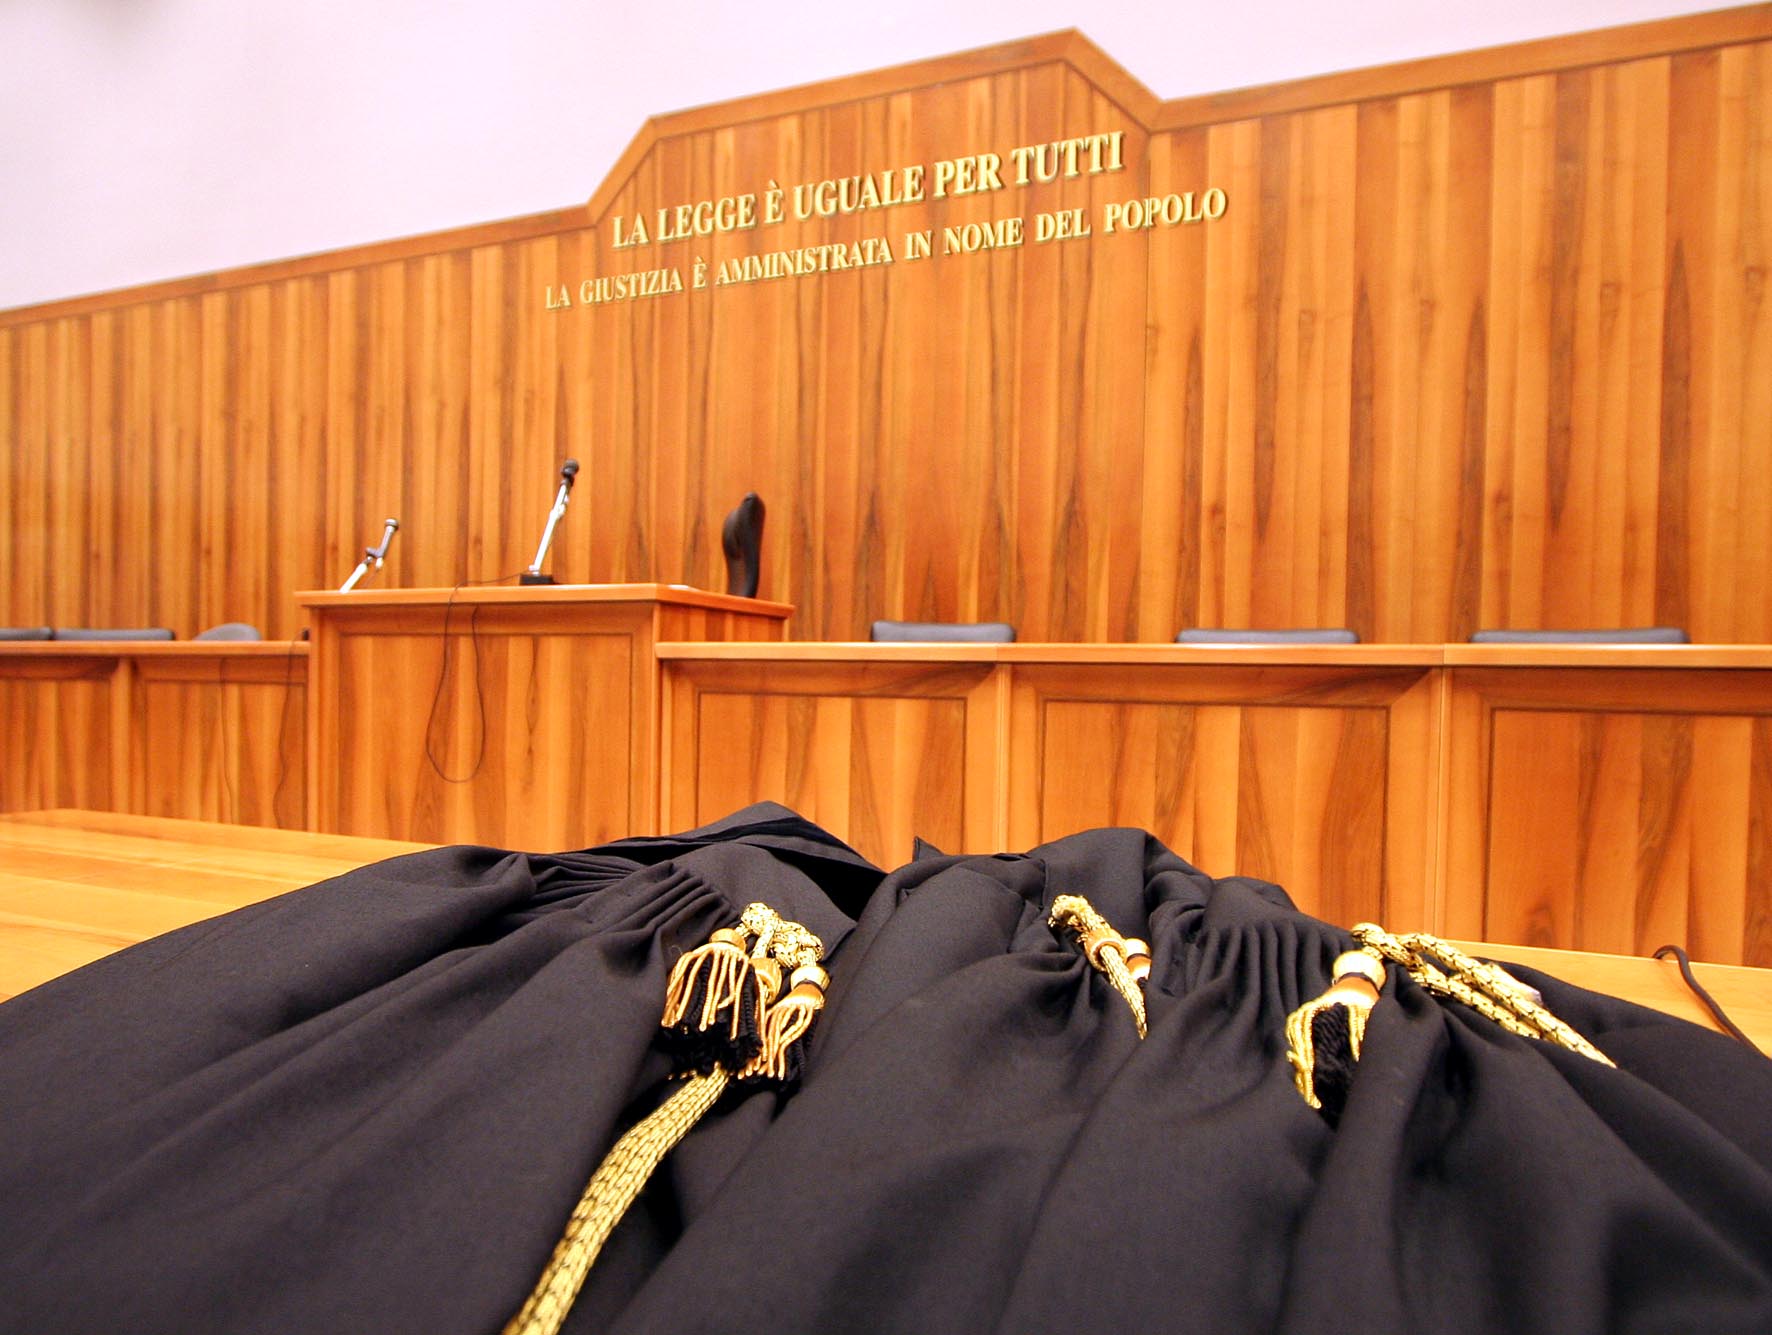  Notte Bianca della Legalità: il 5 maggio i Tribunali di Roma, Palermo Napoli e Genova aperti a 1.200 studentesse e studenti